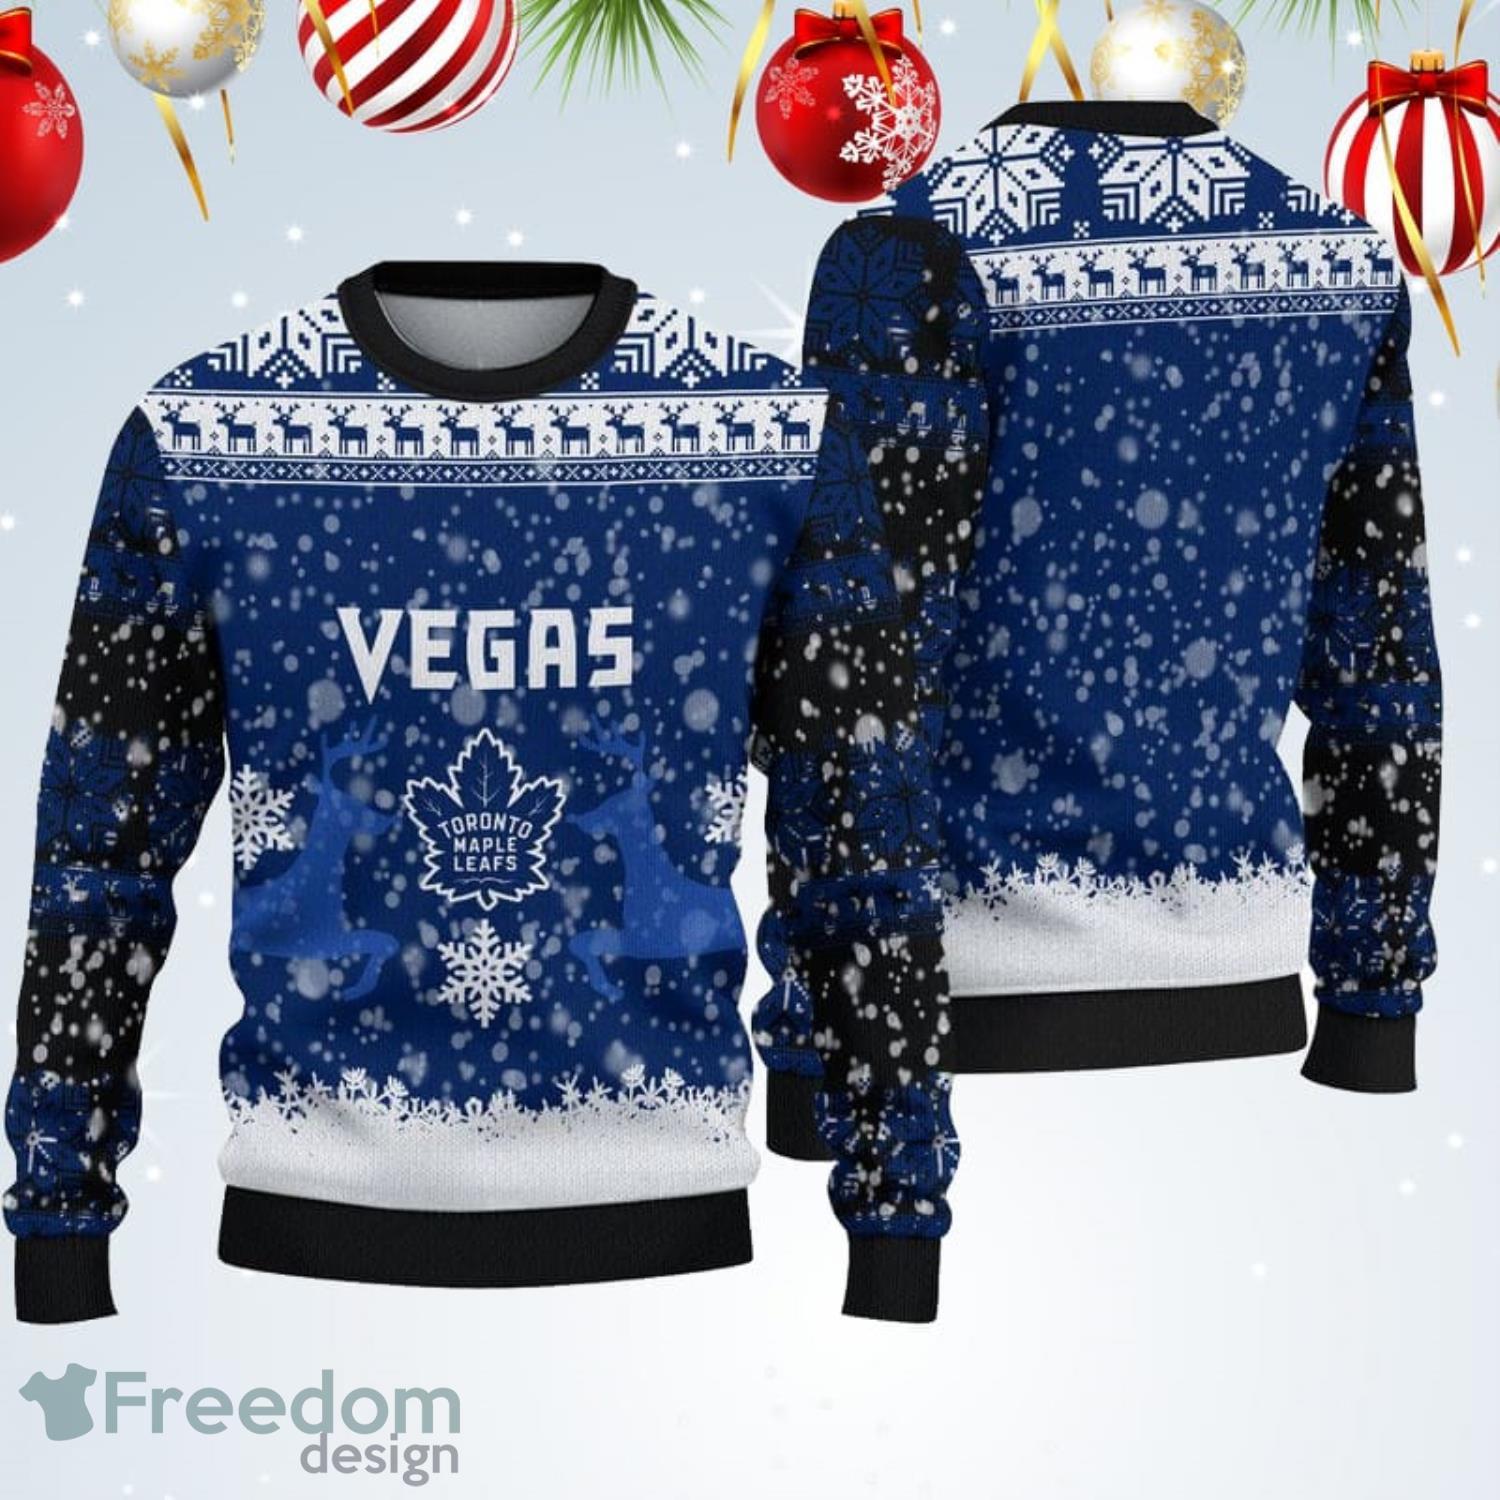 Toronto Maple Leafs Christmas Santa Claus Dabbing Hohoho Ugly Christmas  Sweater Christmas Gift - Banantees